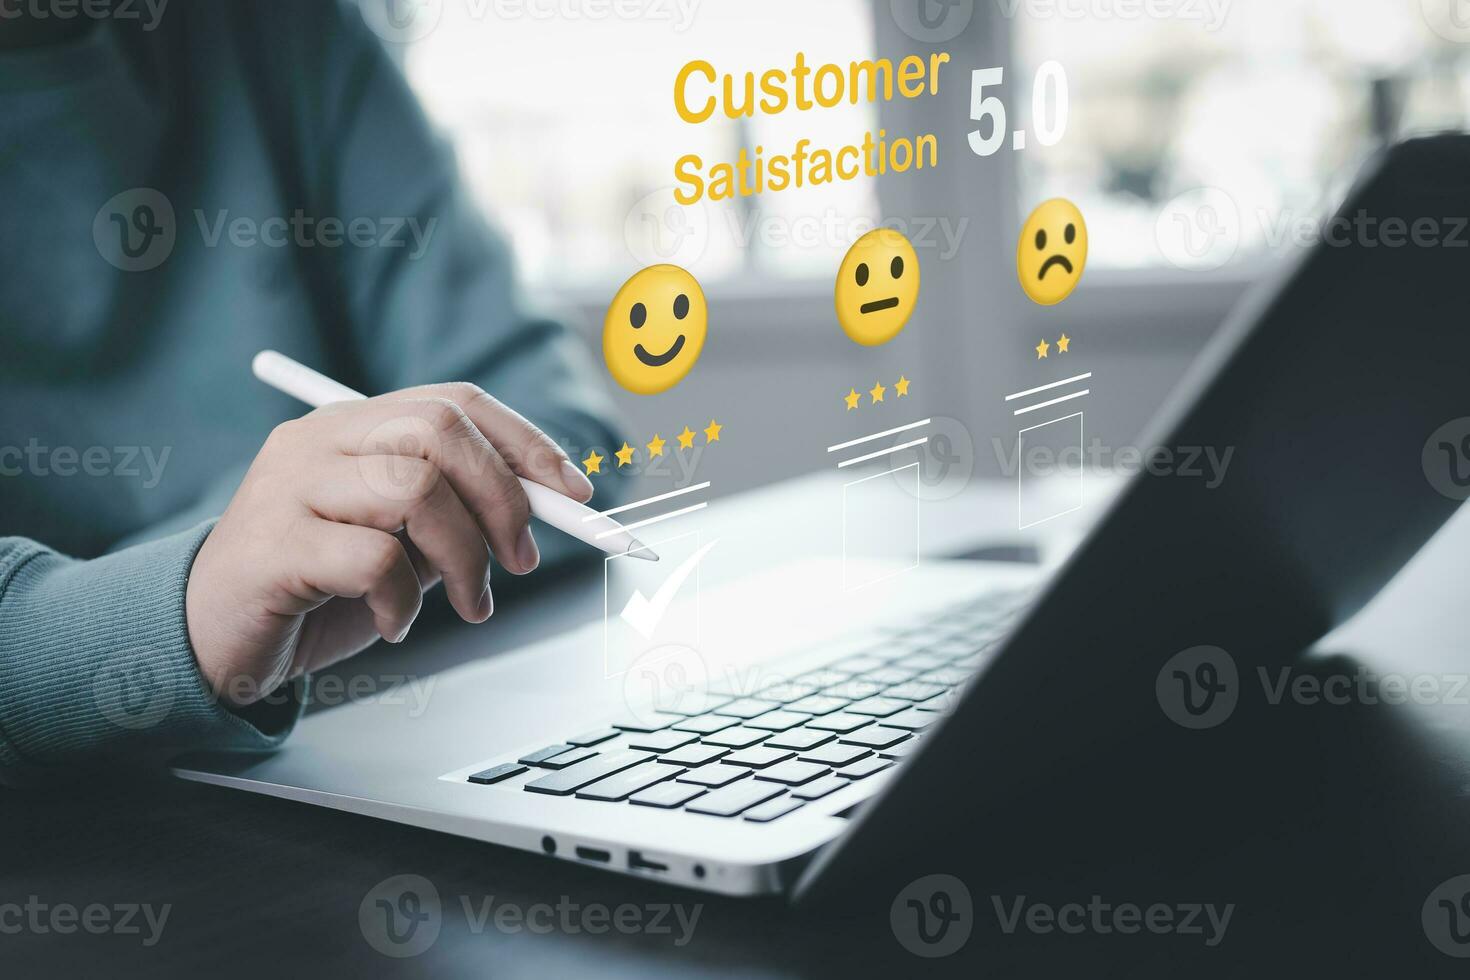 zakenman drukken glimlach Aan laptop toetsenbord klant onderhoud, evaluatie begrip, waardering naar onderhoud ervaring Aan online sollicitatie, klant recensie tevredenheid terugkoppeling onderzoek, negatief terugkoppeling foto